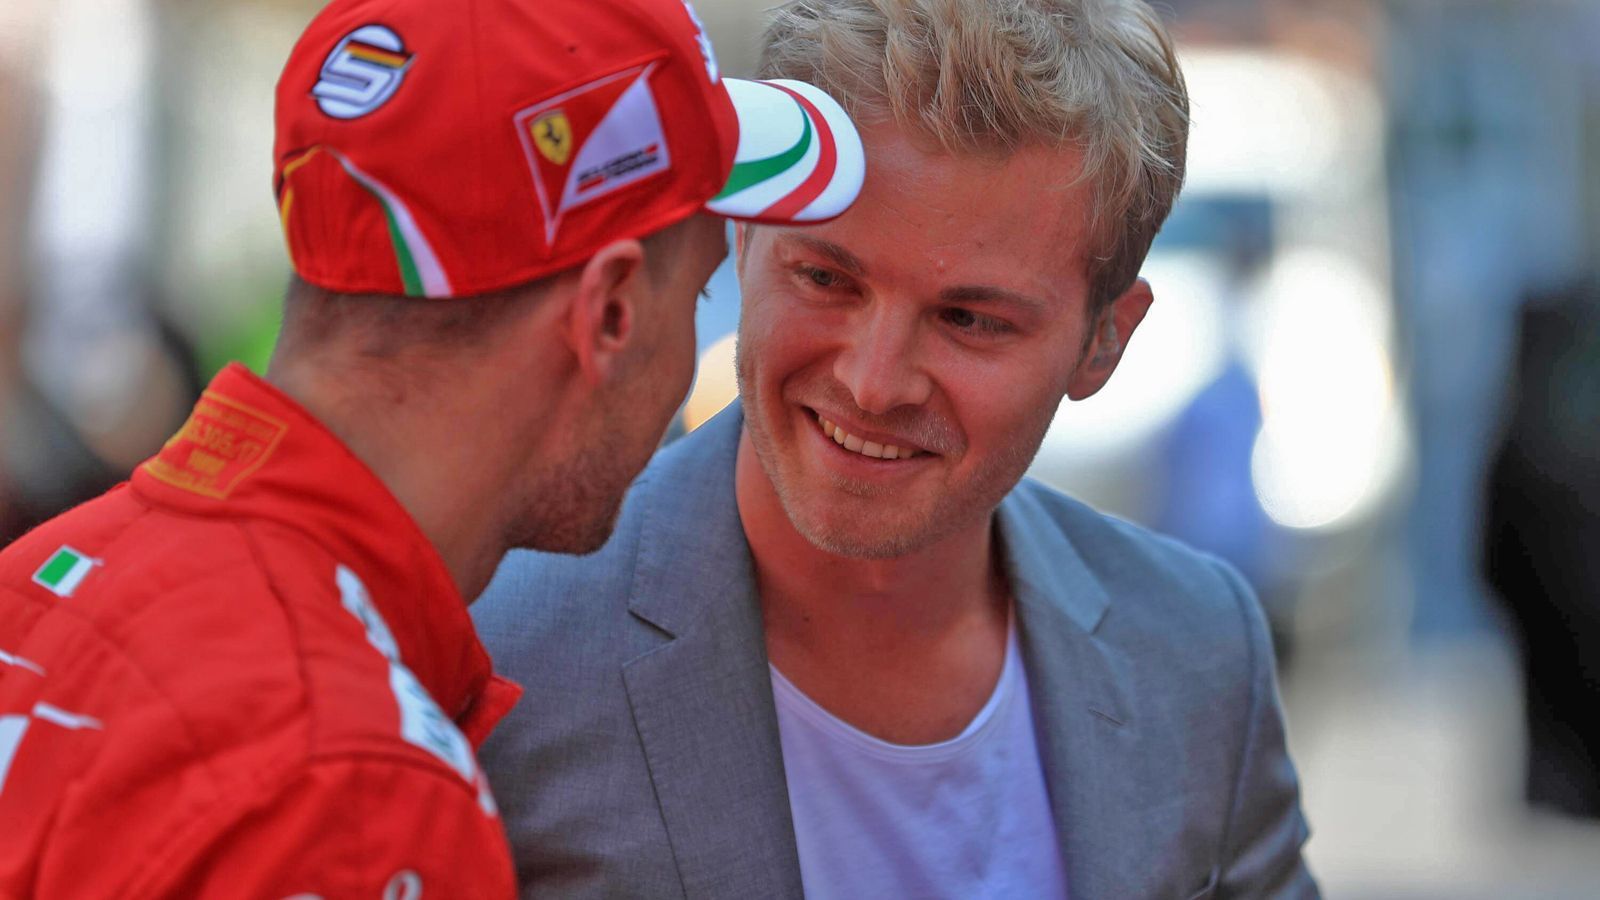 
                <strong>Nico Rosberg bietet sich als Vettel-Ersatz an</strong><br>
                Sollte Vettel aber tatsächlich durch einen erneut strafwürdigen Patzer einmal zum Zuschauen gezwungen sein, würde schon ein anderer Deutscher für sein Cockpit in den Startlöchern stehen - Nico Rosberg: "Kaum zu glauben, dass er [Vettel, Anm. d. Red] jetzt schon neun Strafpunkte hat! Erreicht er zwölf Punkte in den kommenden drei Rennen, muss er ein Rennen für Ferrari aussetzen", erklärt der Ex-F1-Star und TV-Experte in einem Video auf YouTube. Und richtet sich dann mit einer Comeback-Idee an die Scuderia: "Ich bewerbe mich hiermit! Ich stehe zur Verfügung, falls das tatsächlich passieren sollte." Danach klärt der ehemalige Mercedes-Pilot jedoch auf: "Ich mache nur Scherze." Für Vettel hingegen ist der drohende Ärger kein Scherz, sondern Realität. Und das nicht ohne Grund. Im Vergleich zu ihm ist Weltmeister Lewis Hamilton die Unschuld vom Lande. Der Brite kommt erst auf fünf Strafpunkte und hat in der aktuellen Saison nur einen einzigen zugesprochen bekommen. ran.de zeigt euch die 15 Fahrer, die seit 2014 die meisten Strafpunkte in der Formel 1 gesammelt haben. 
              